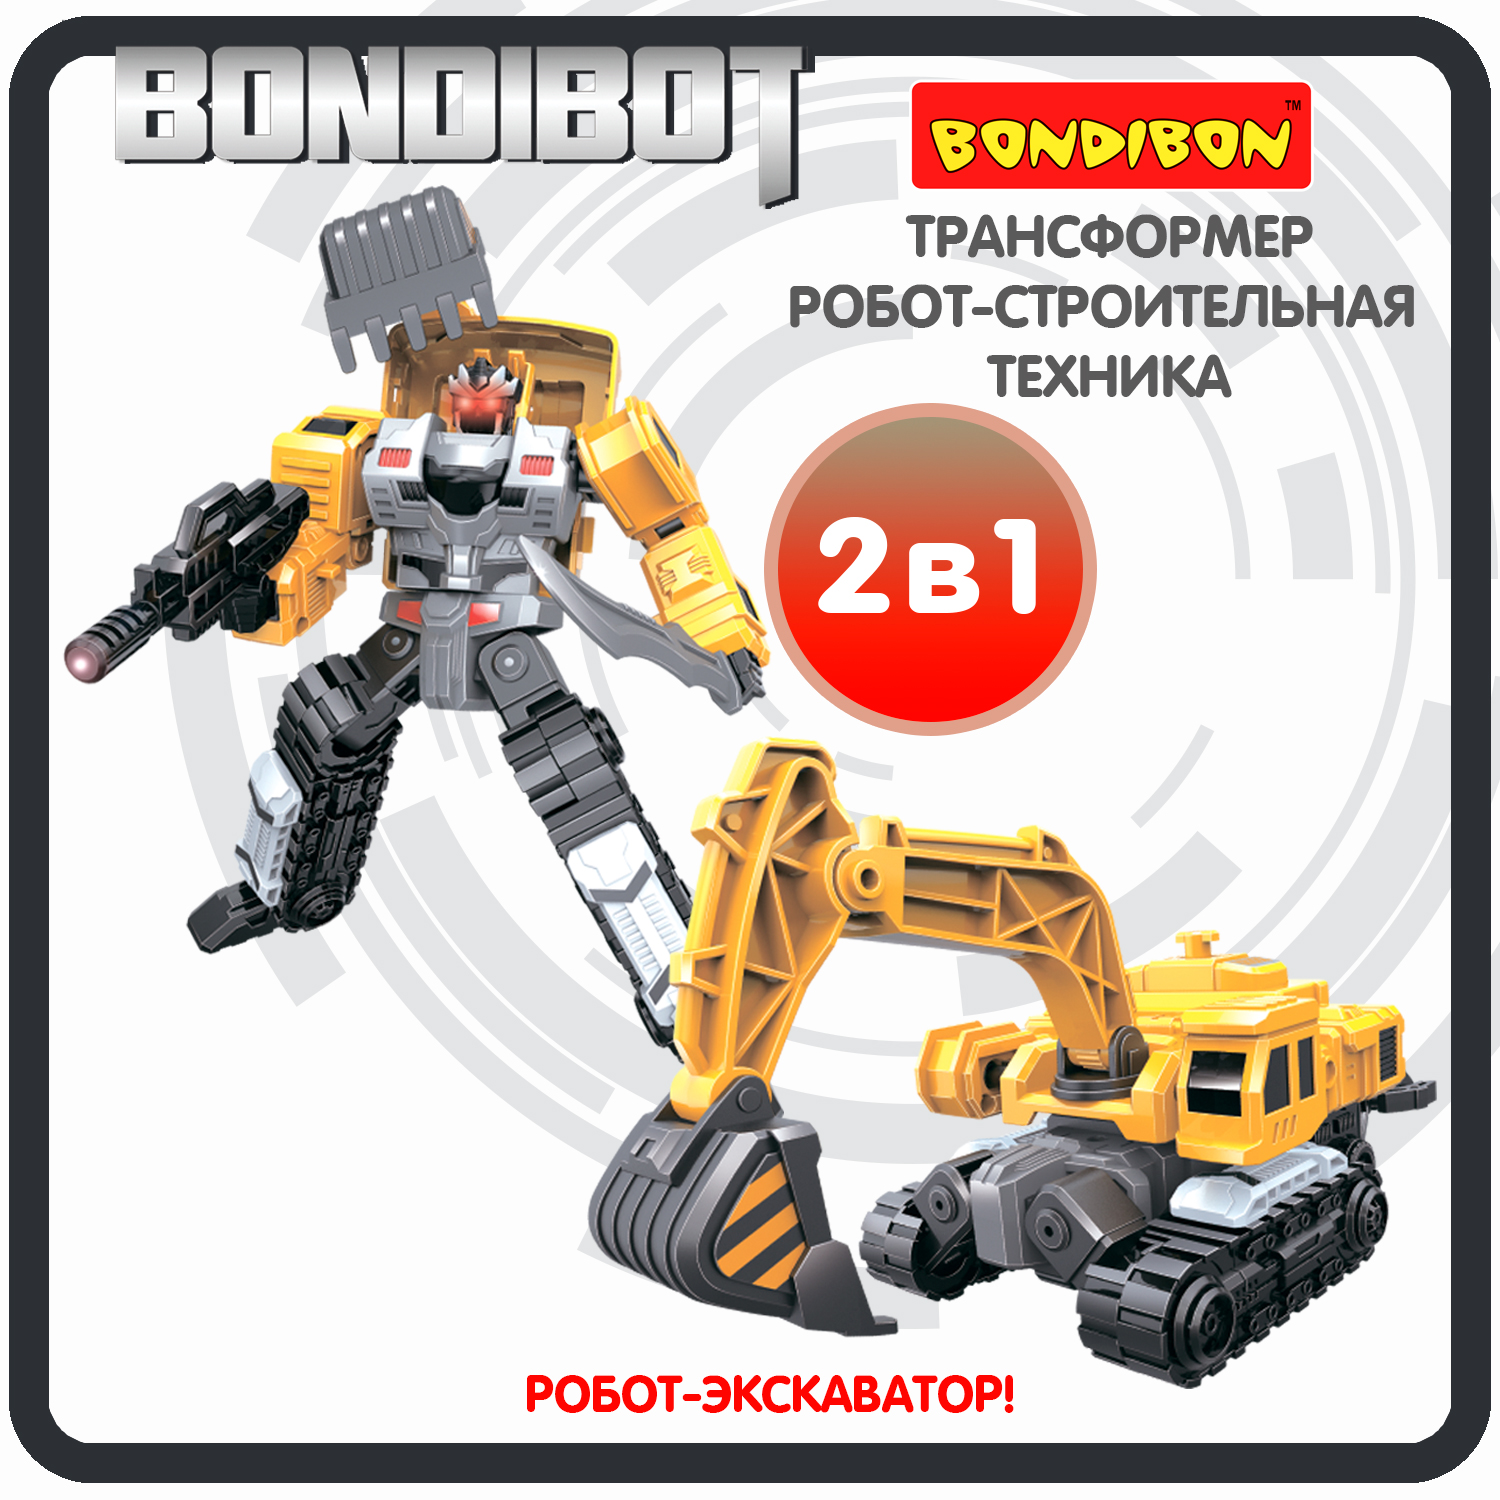 Трансформер робот-строительная техника, 2в1 BONDIBOT Bondibon, экскаватор / ВВ6048 bondibon трансформер bondibot 2 в 1 робот полицейская машина